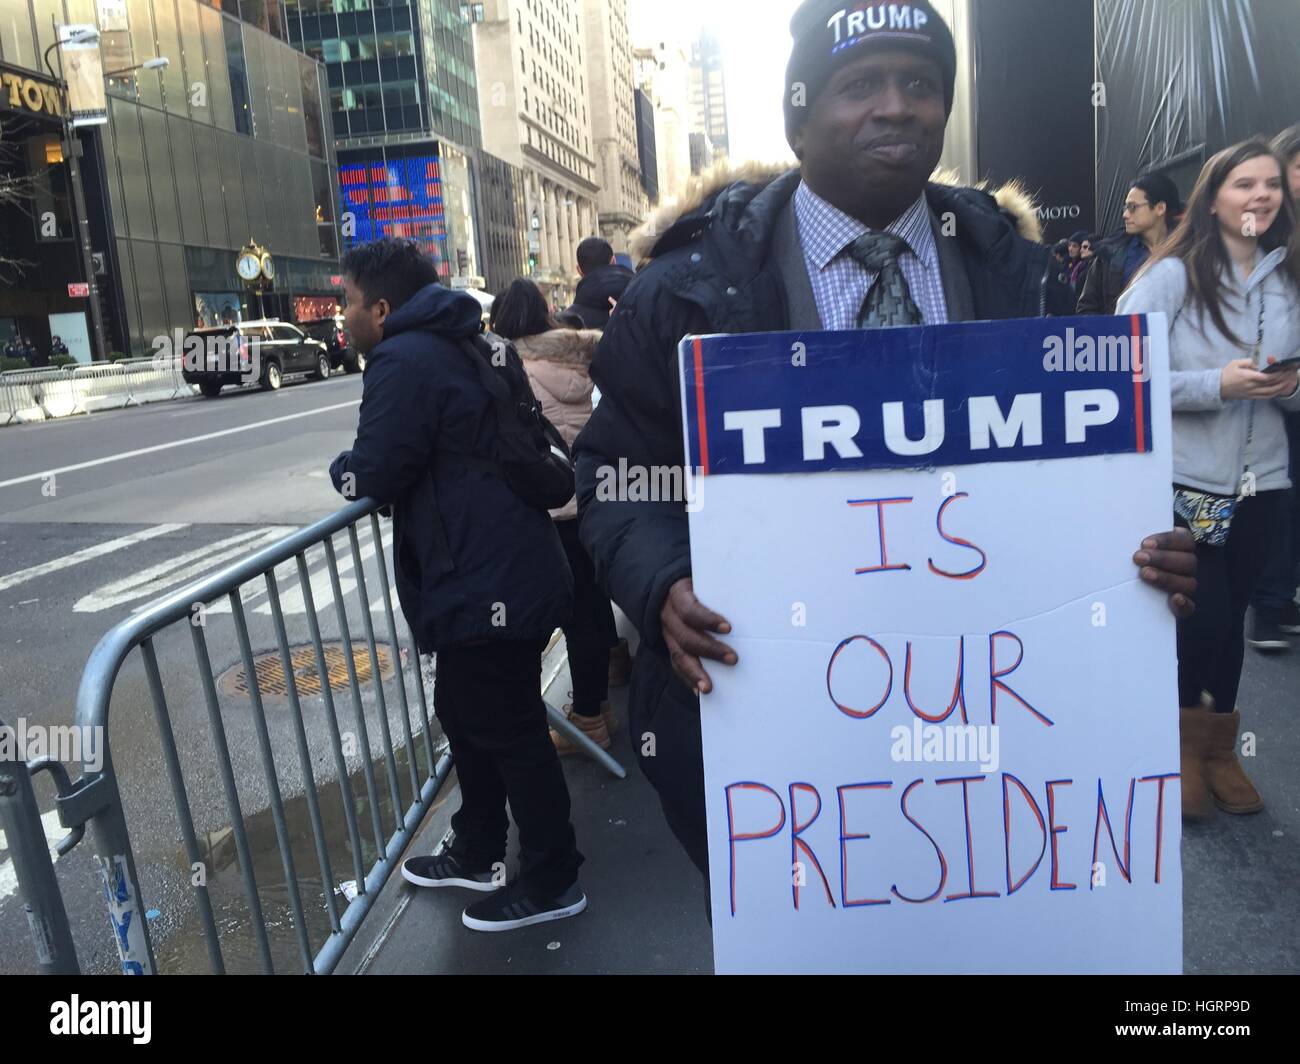 New York, USA. Feb 11, 2017. Un homme tenant une bannière qui se lit "Trump est notre président" à l'extérieur de Trump Tower au cours de la conférence de presse du président élu Trump, à New York, USA, 11 février 2017. Photo : Christina Horsten/dpa/Alamy Live News Banque D'Images